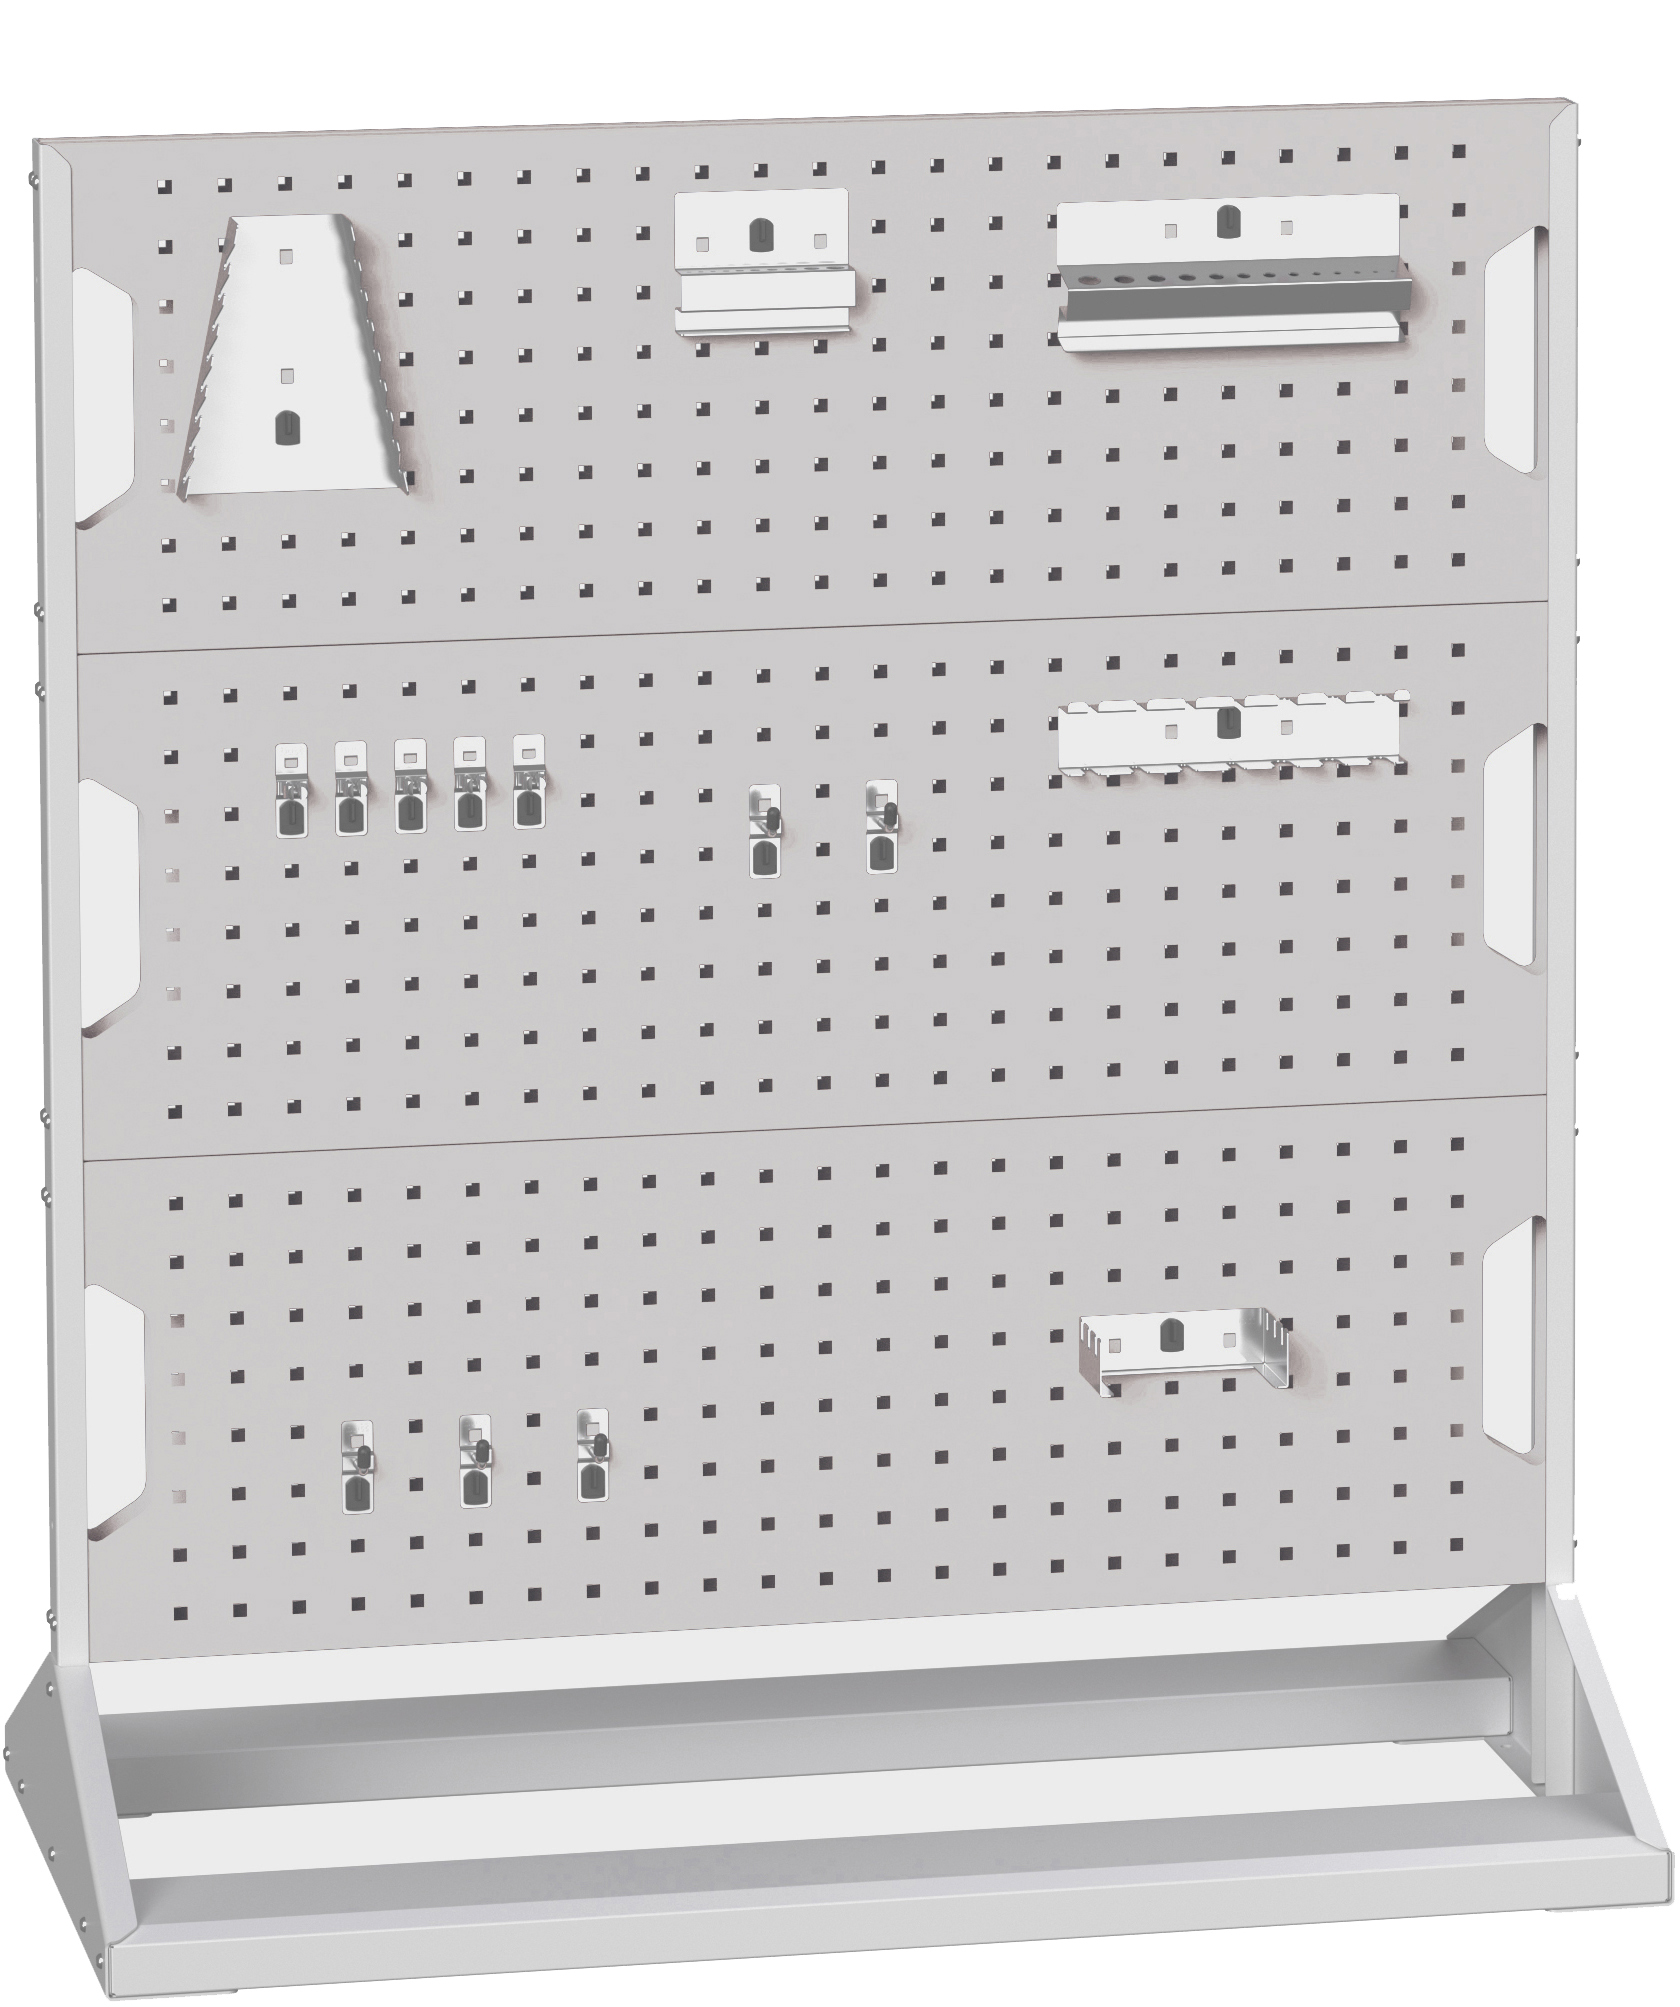 Bott Perfo Panel Rack (Double Sided) - 16917200.16V